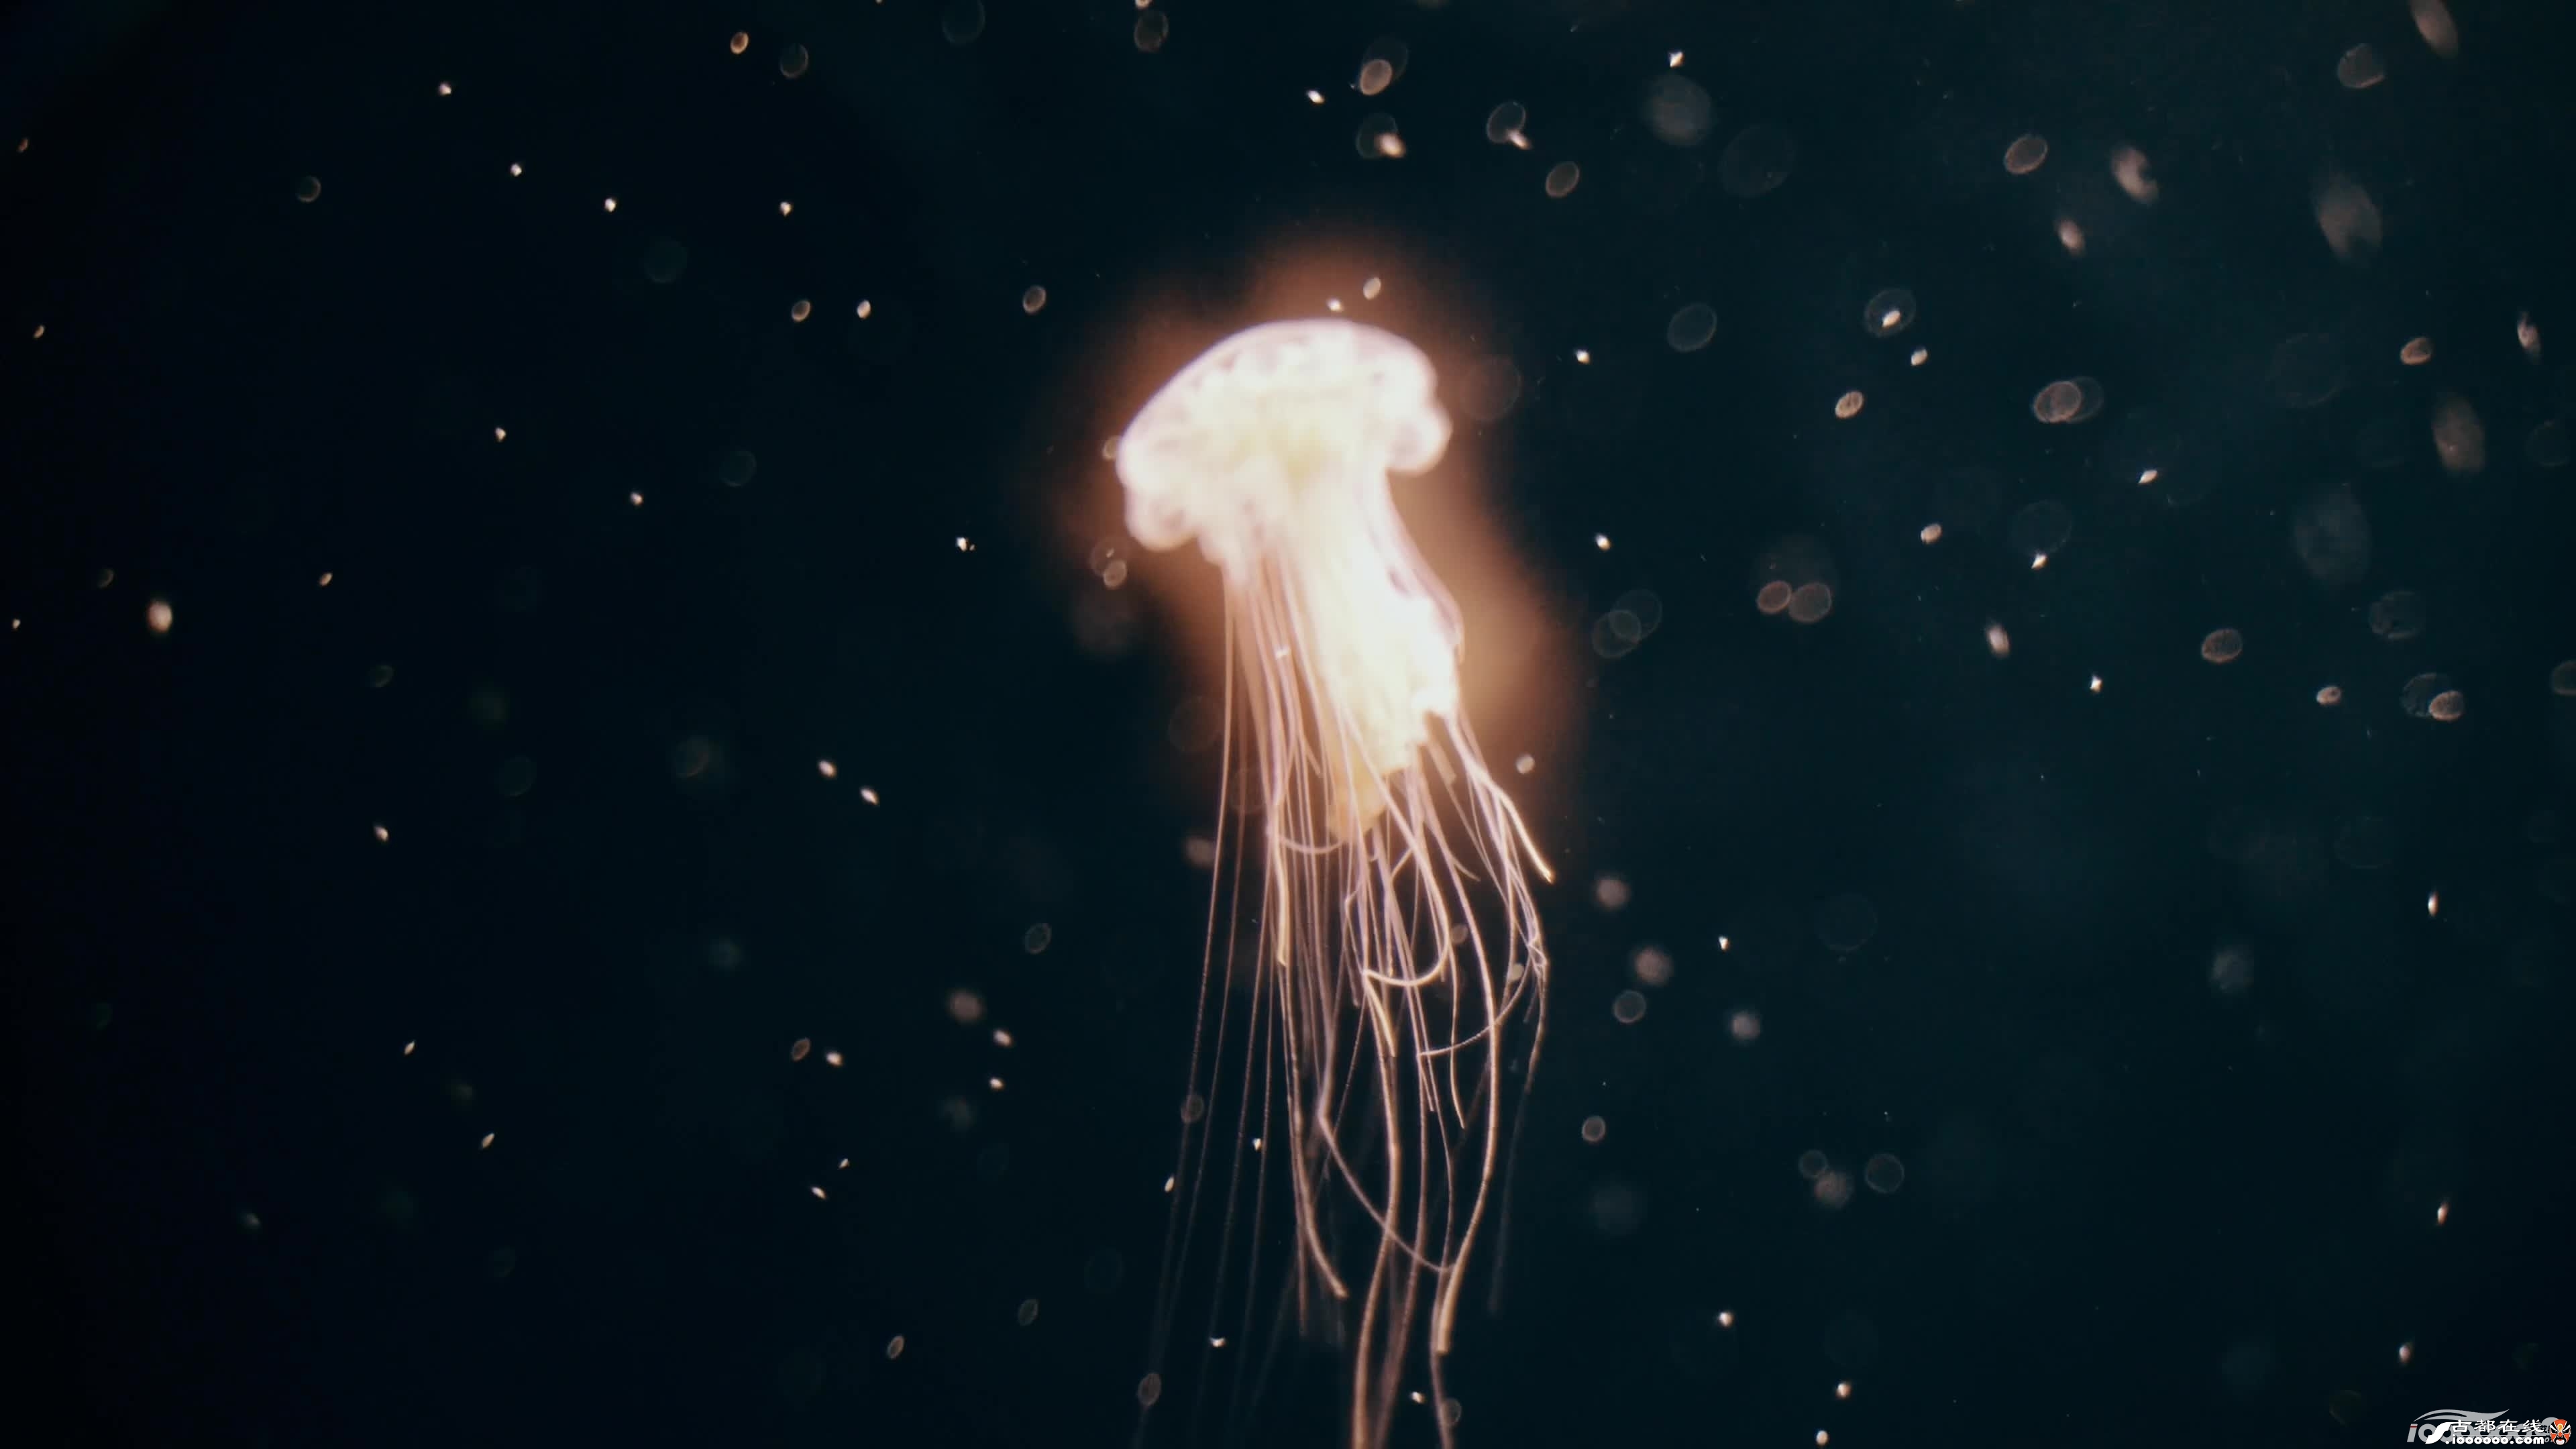 西安古都在线素材10张漂亮海底水母无水印免费高清图片素材下载 ... ...